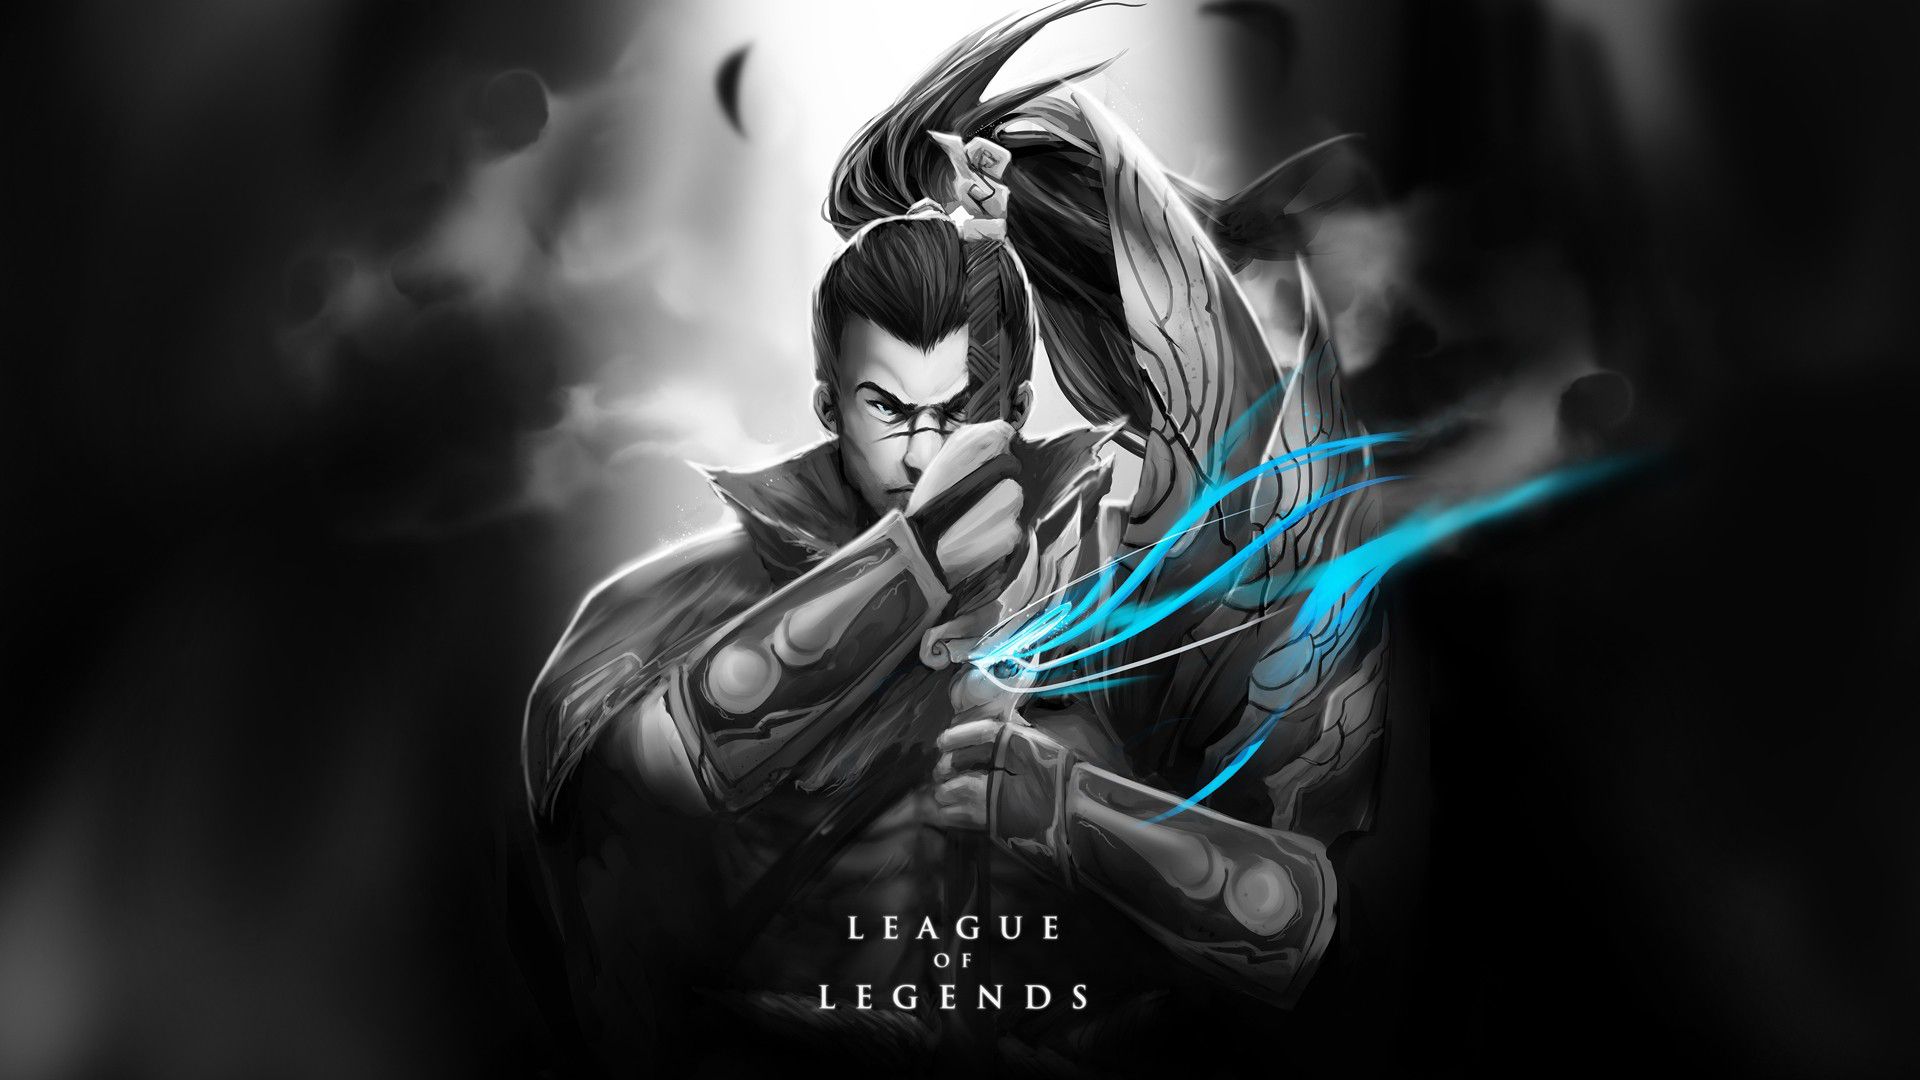 League of Legends - League of Legends Wallpapers